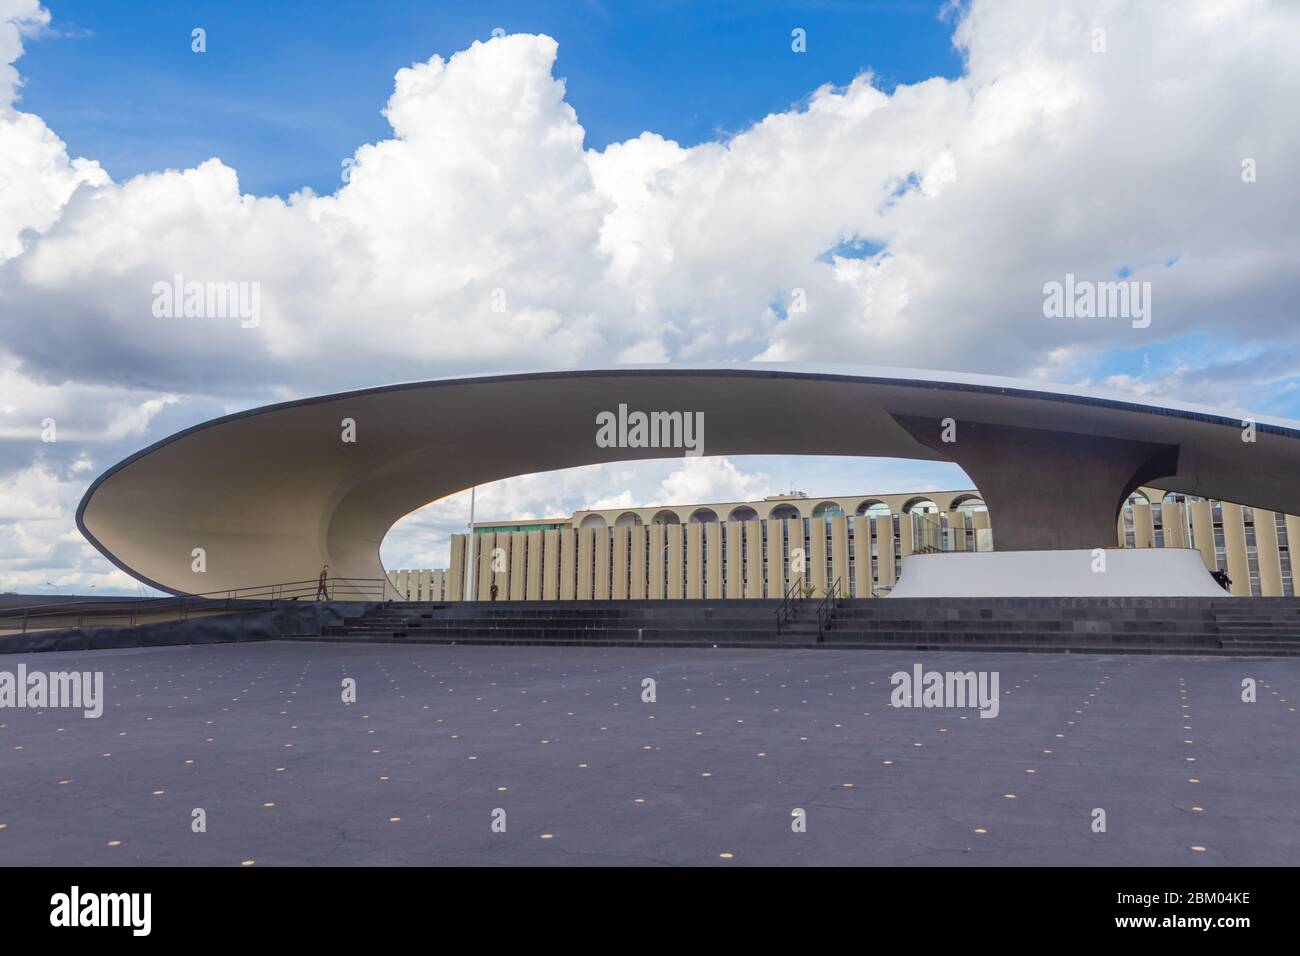 Quartier général militaire brésilien de la Défense nationale, Oscar Niemeyer, Brasilia, Brésil Banque D'Images